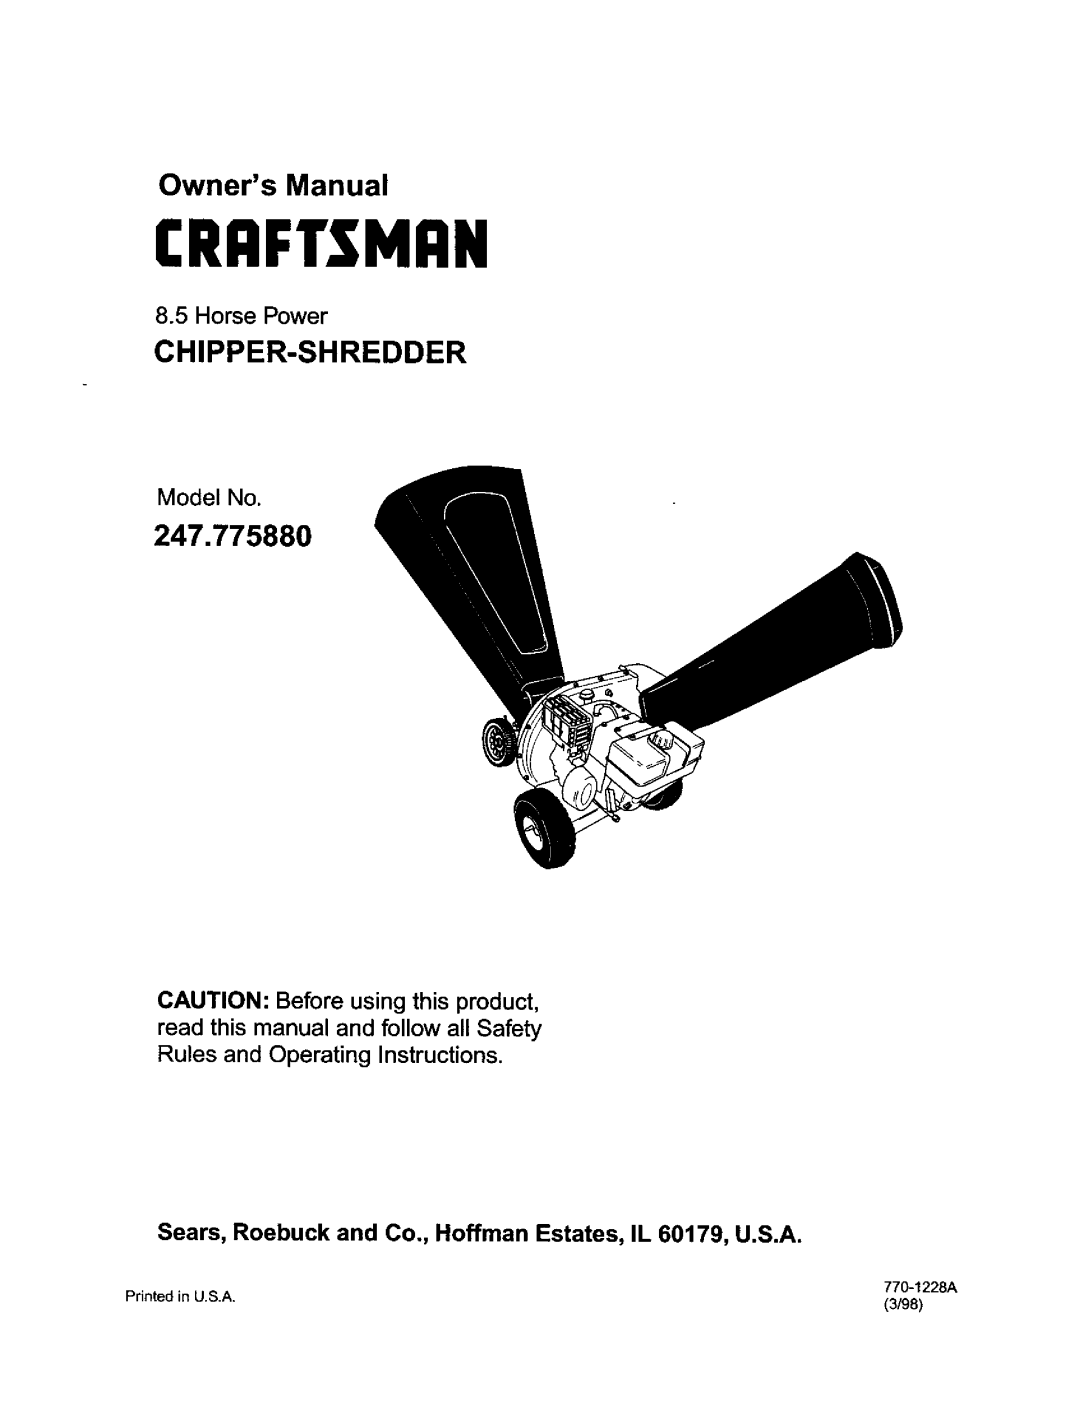 Craftsman 247.77588O owner manual Chipper-Shredder, Horse Power, Model No, Craftsman, 770-1228A 